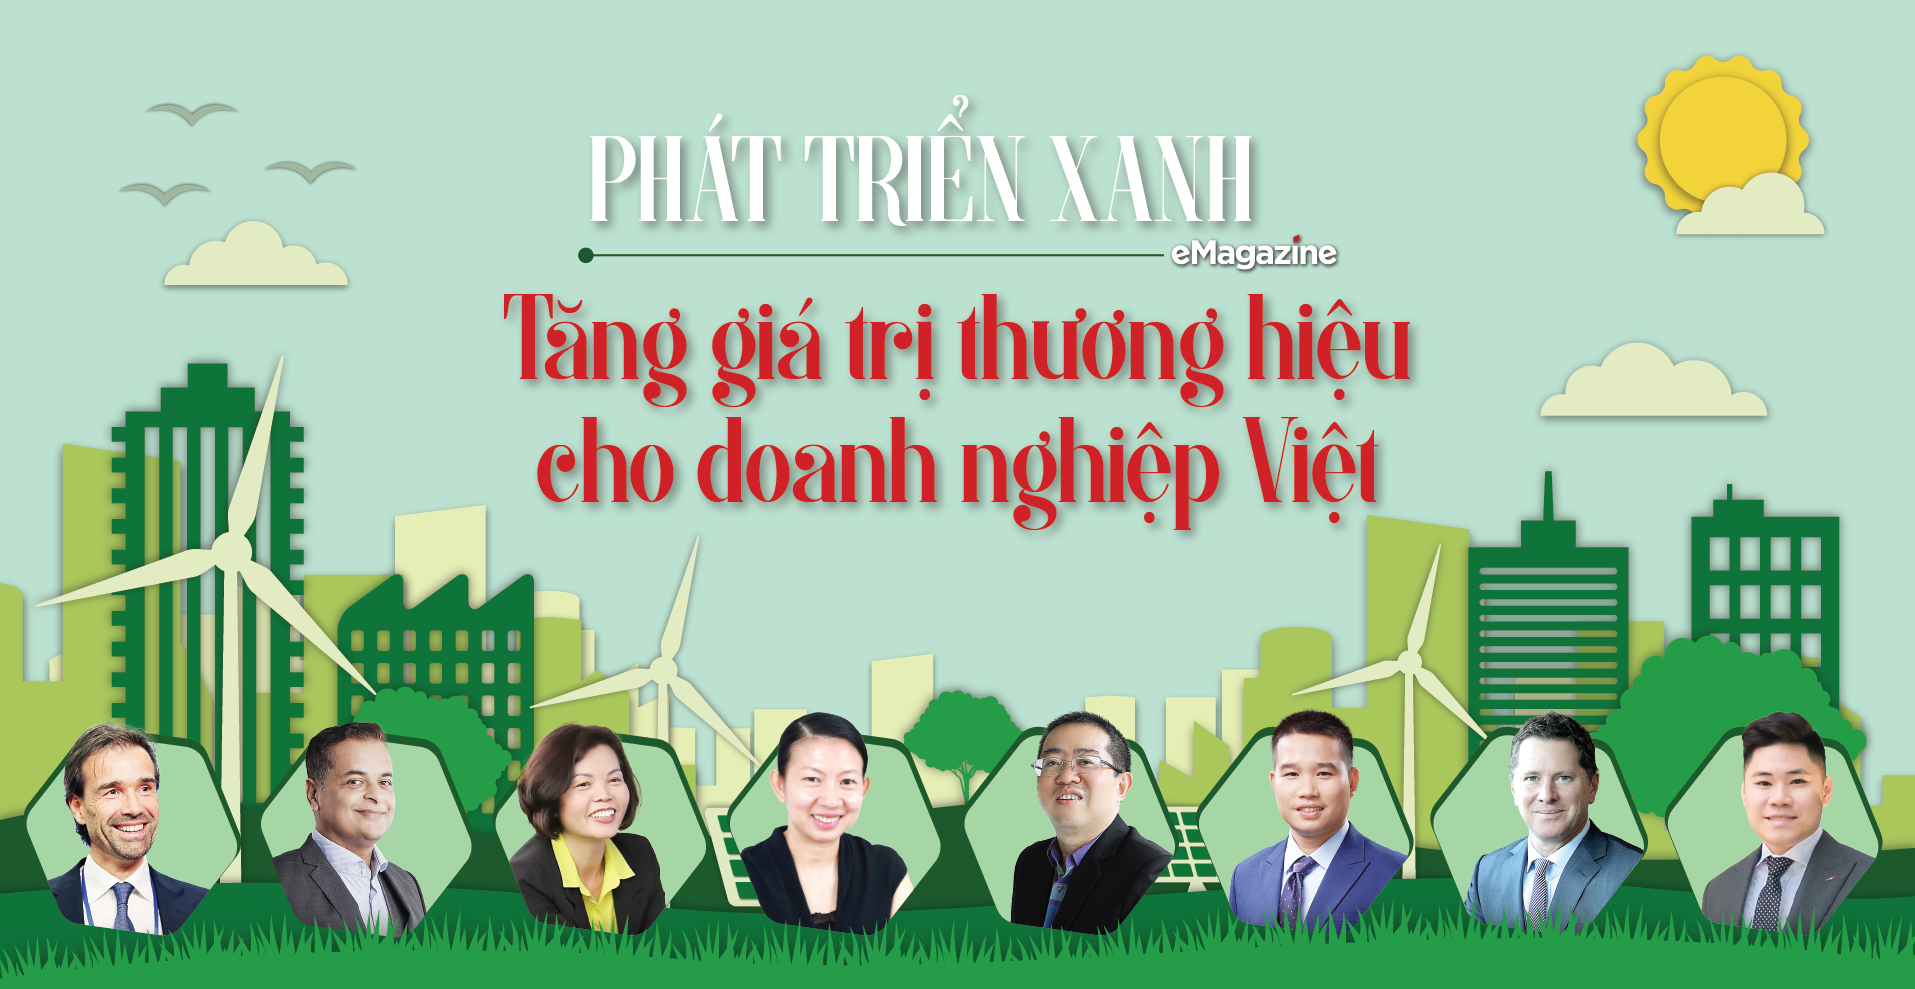 Phát triển xanh: Tăng giá trị thương hiệu cho doanh nghiệp Việt - Ảnh 1